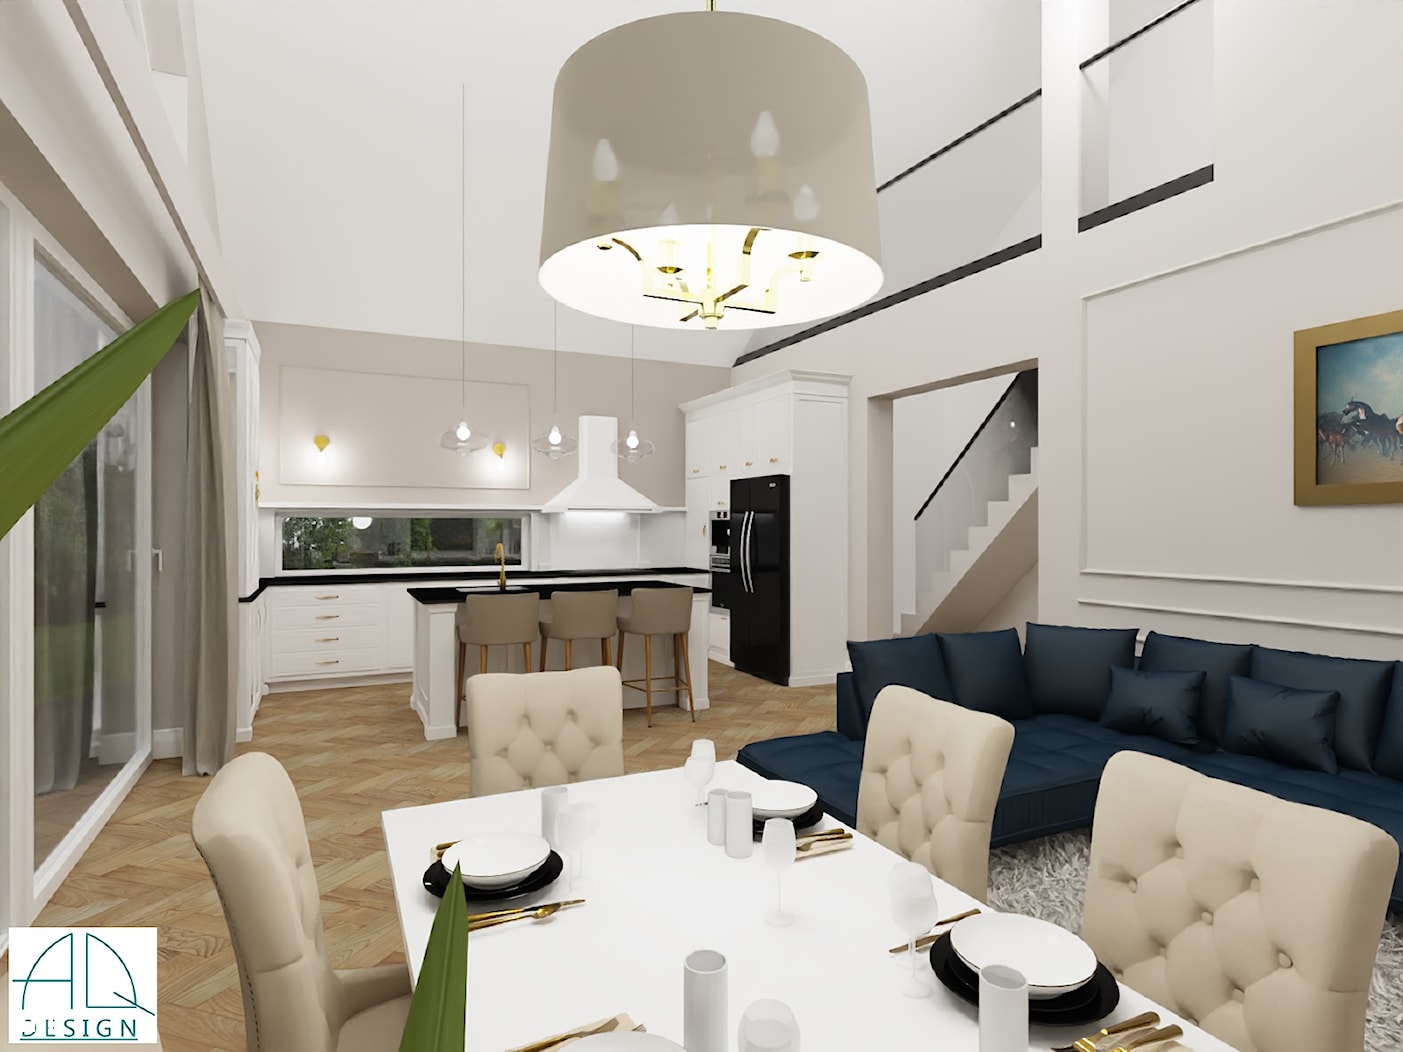 salon z kuchnią w stylu New Hamptons - zdjęcie od AQ Design - Homebook